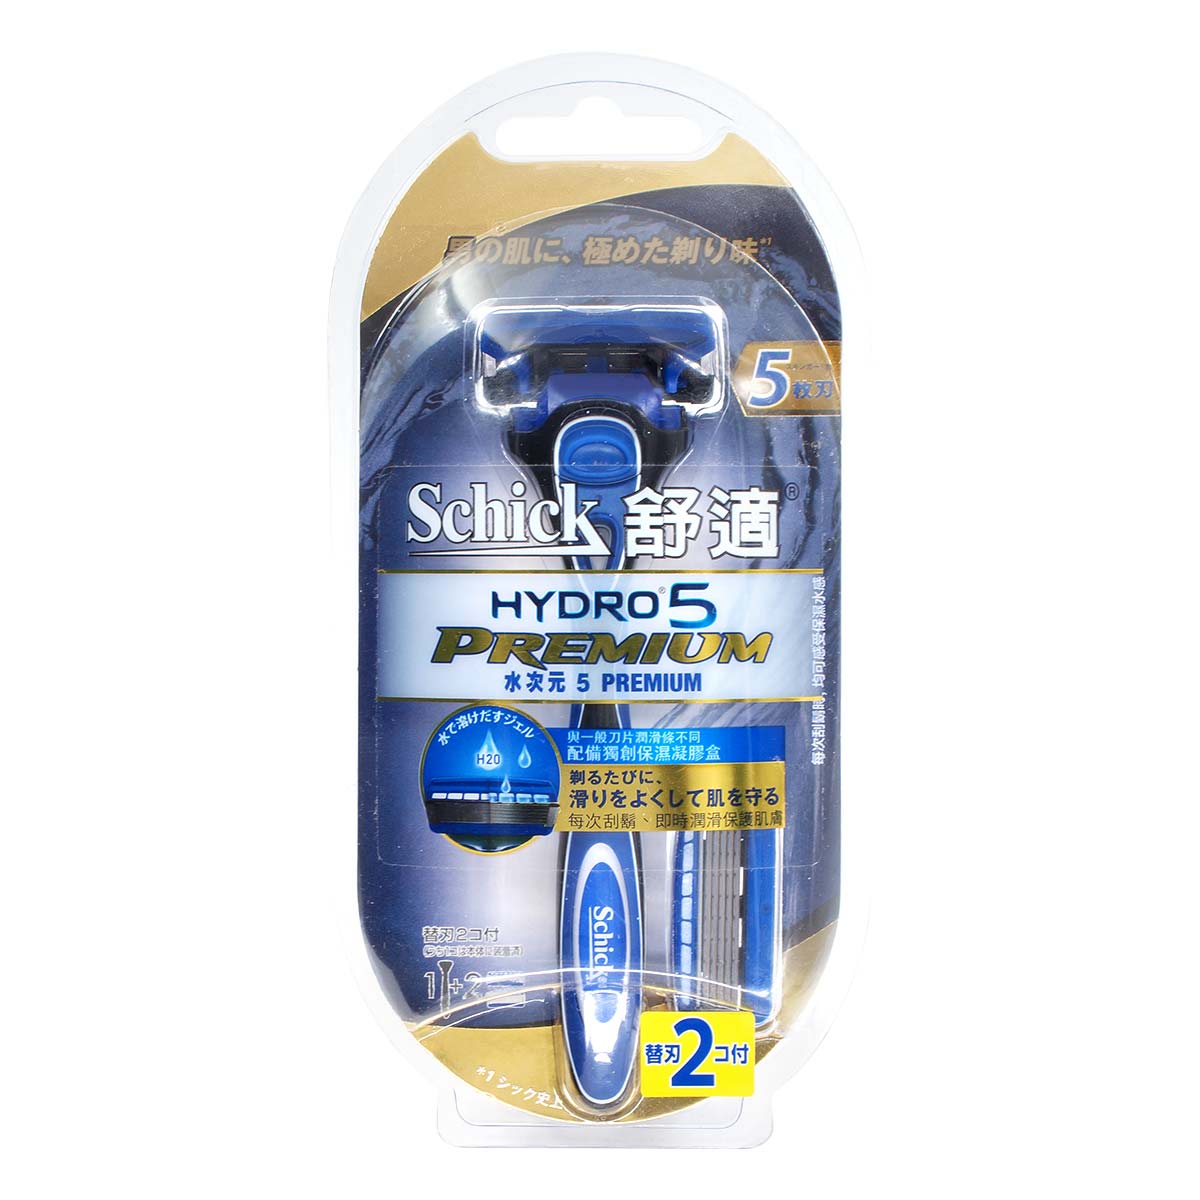 Schick Hydro5 Premium Razor-p_2